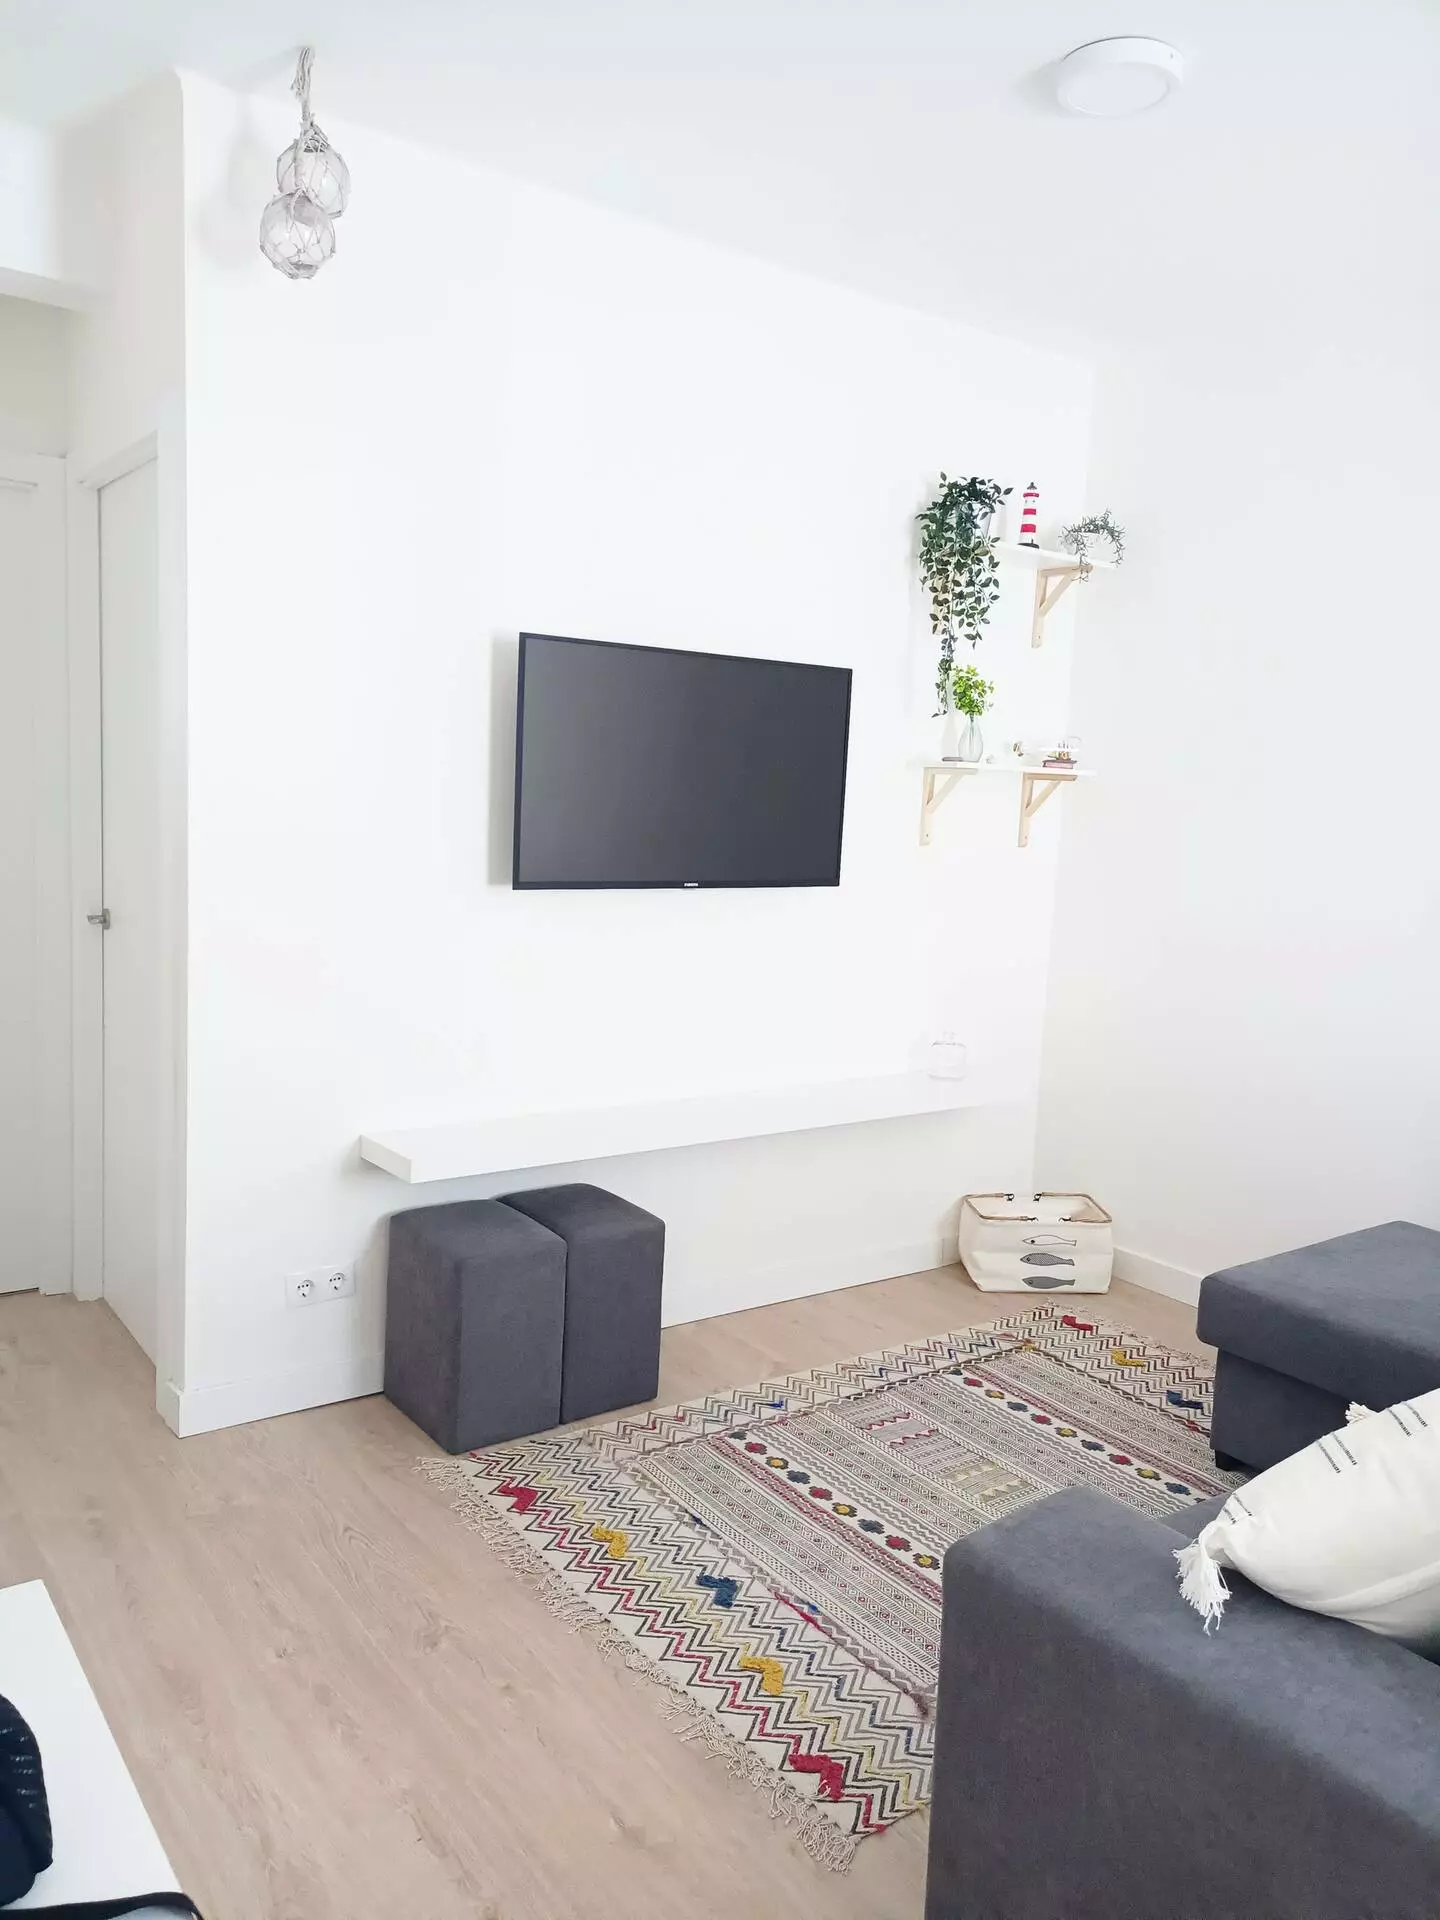 Salón del piso de vacaciones en Cedeira, con televisor, alfombra, estanterías y sofás recién reformados